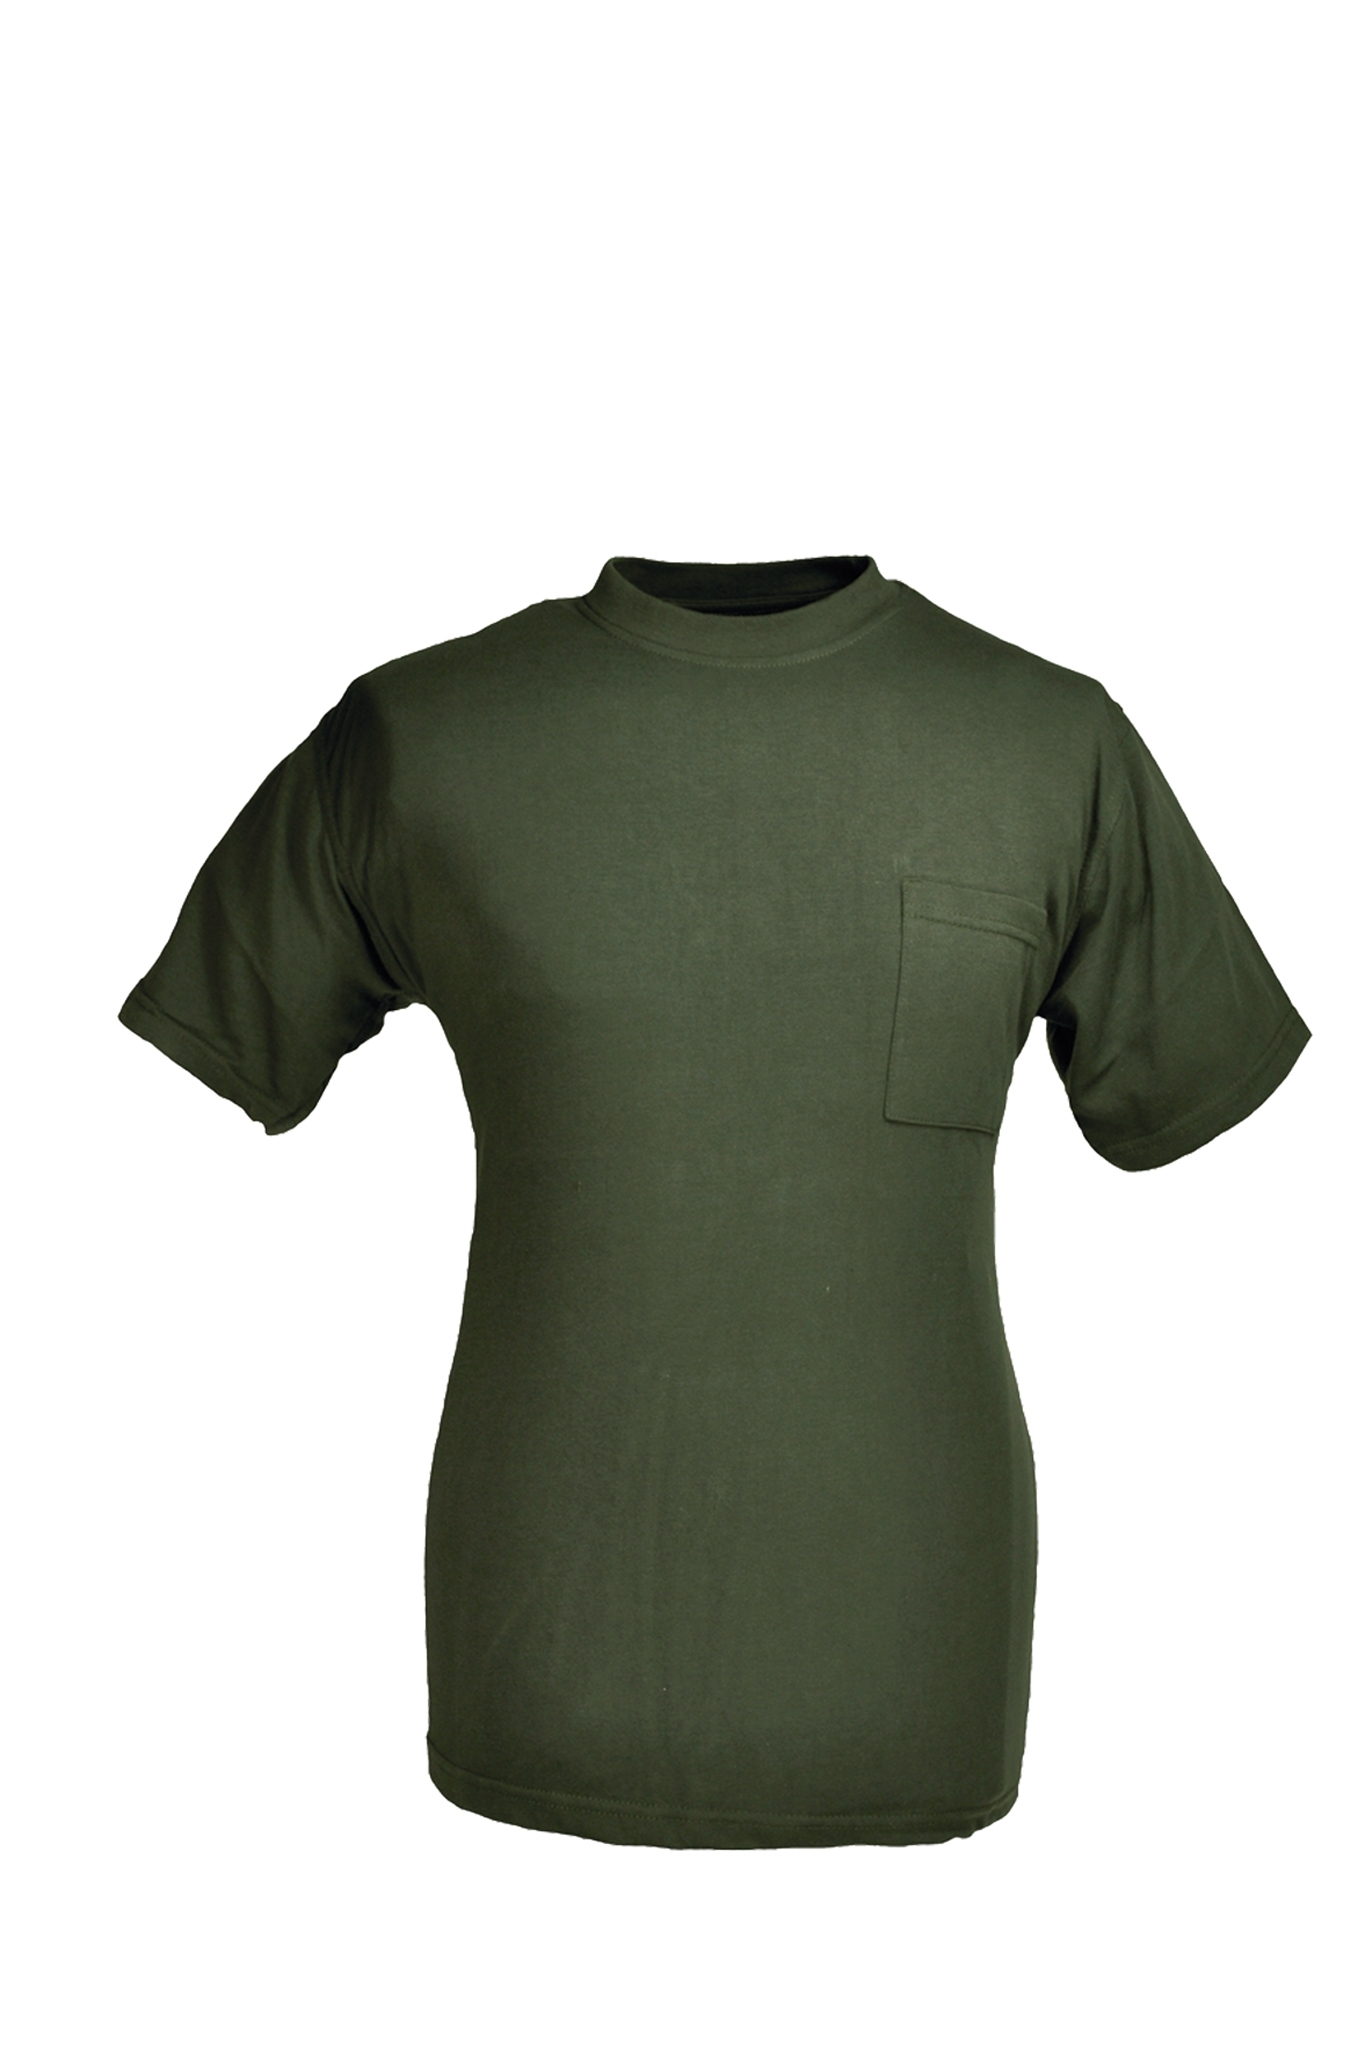 Rundhals T-Shirt oliv Gr.8XL 10227843